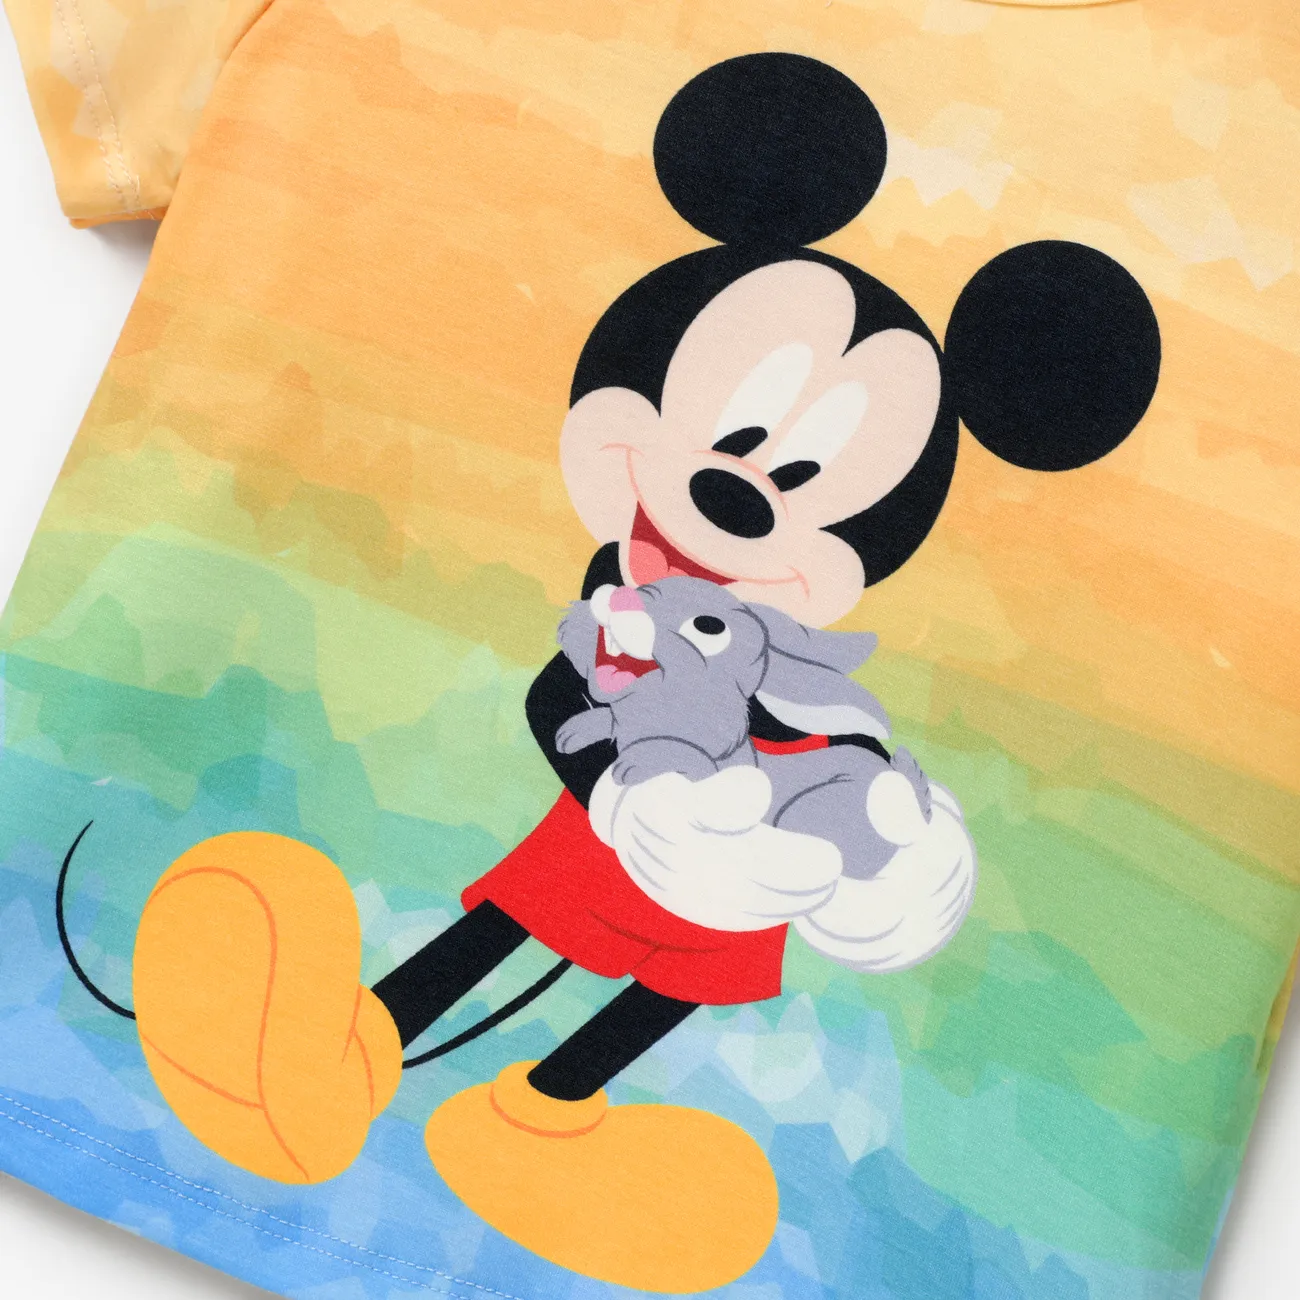 Disney Mickey and Friends 1pc Niño Pequeño / Niña / Niño Personaje Atado / Rayas / Estampado Colorido Naia™ Camiseta de manga corta Bloque de color big image 1